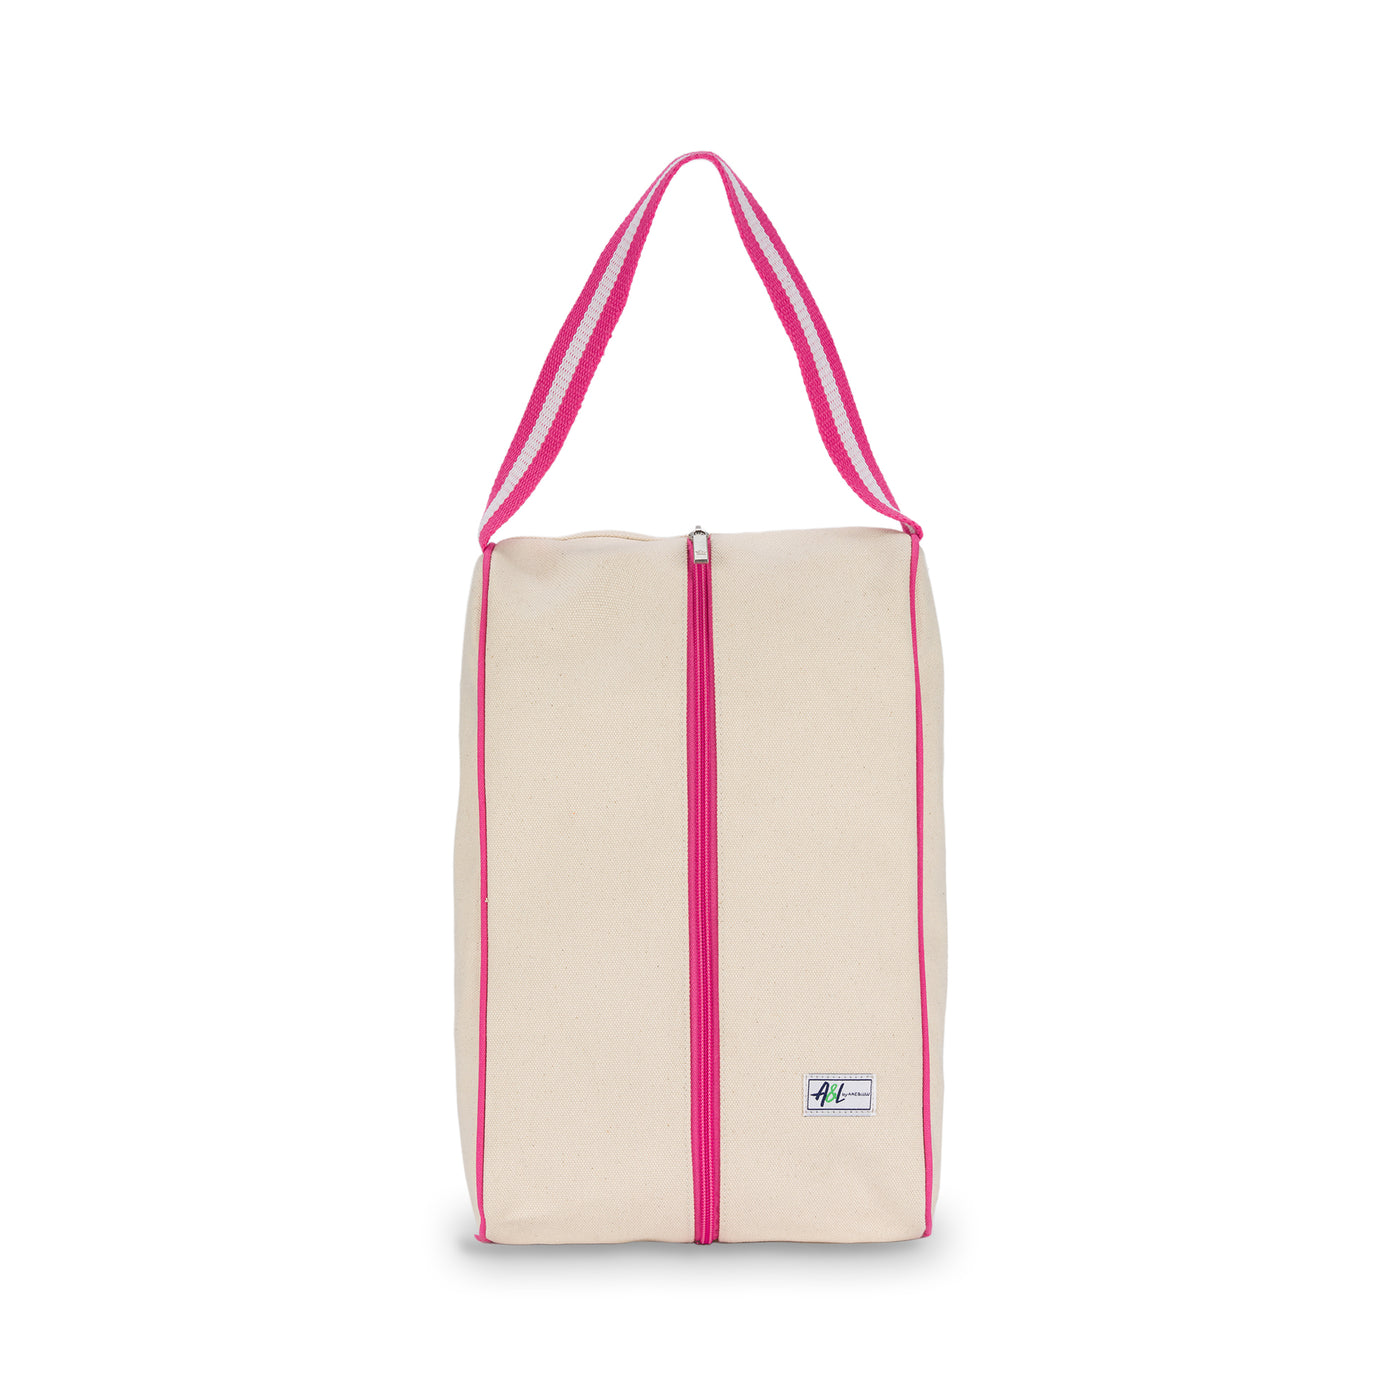 rectangular tan canvas shoe bag with hot pink handles.